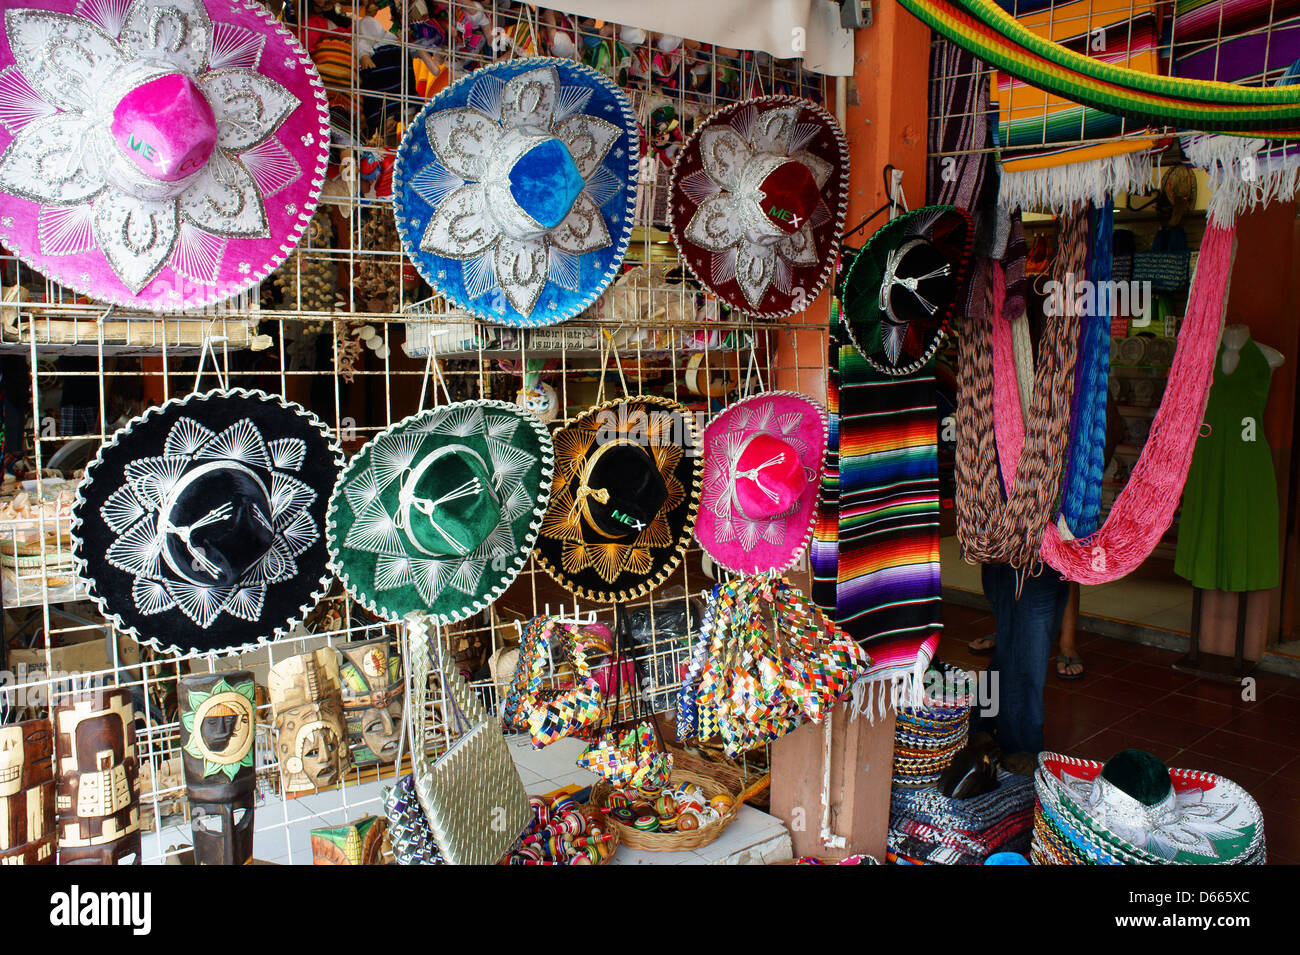 Sombreros mexicains, des hamacs, et d'autres dans l'artisanat Mercado 28 souvenirs et marché artisanal à Cancun, Mexique Banque D'Images